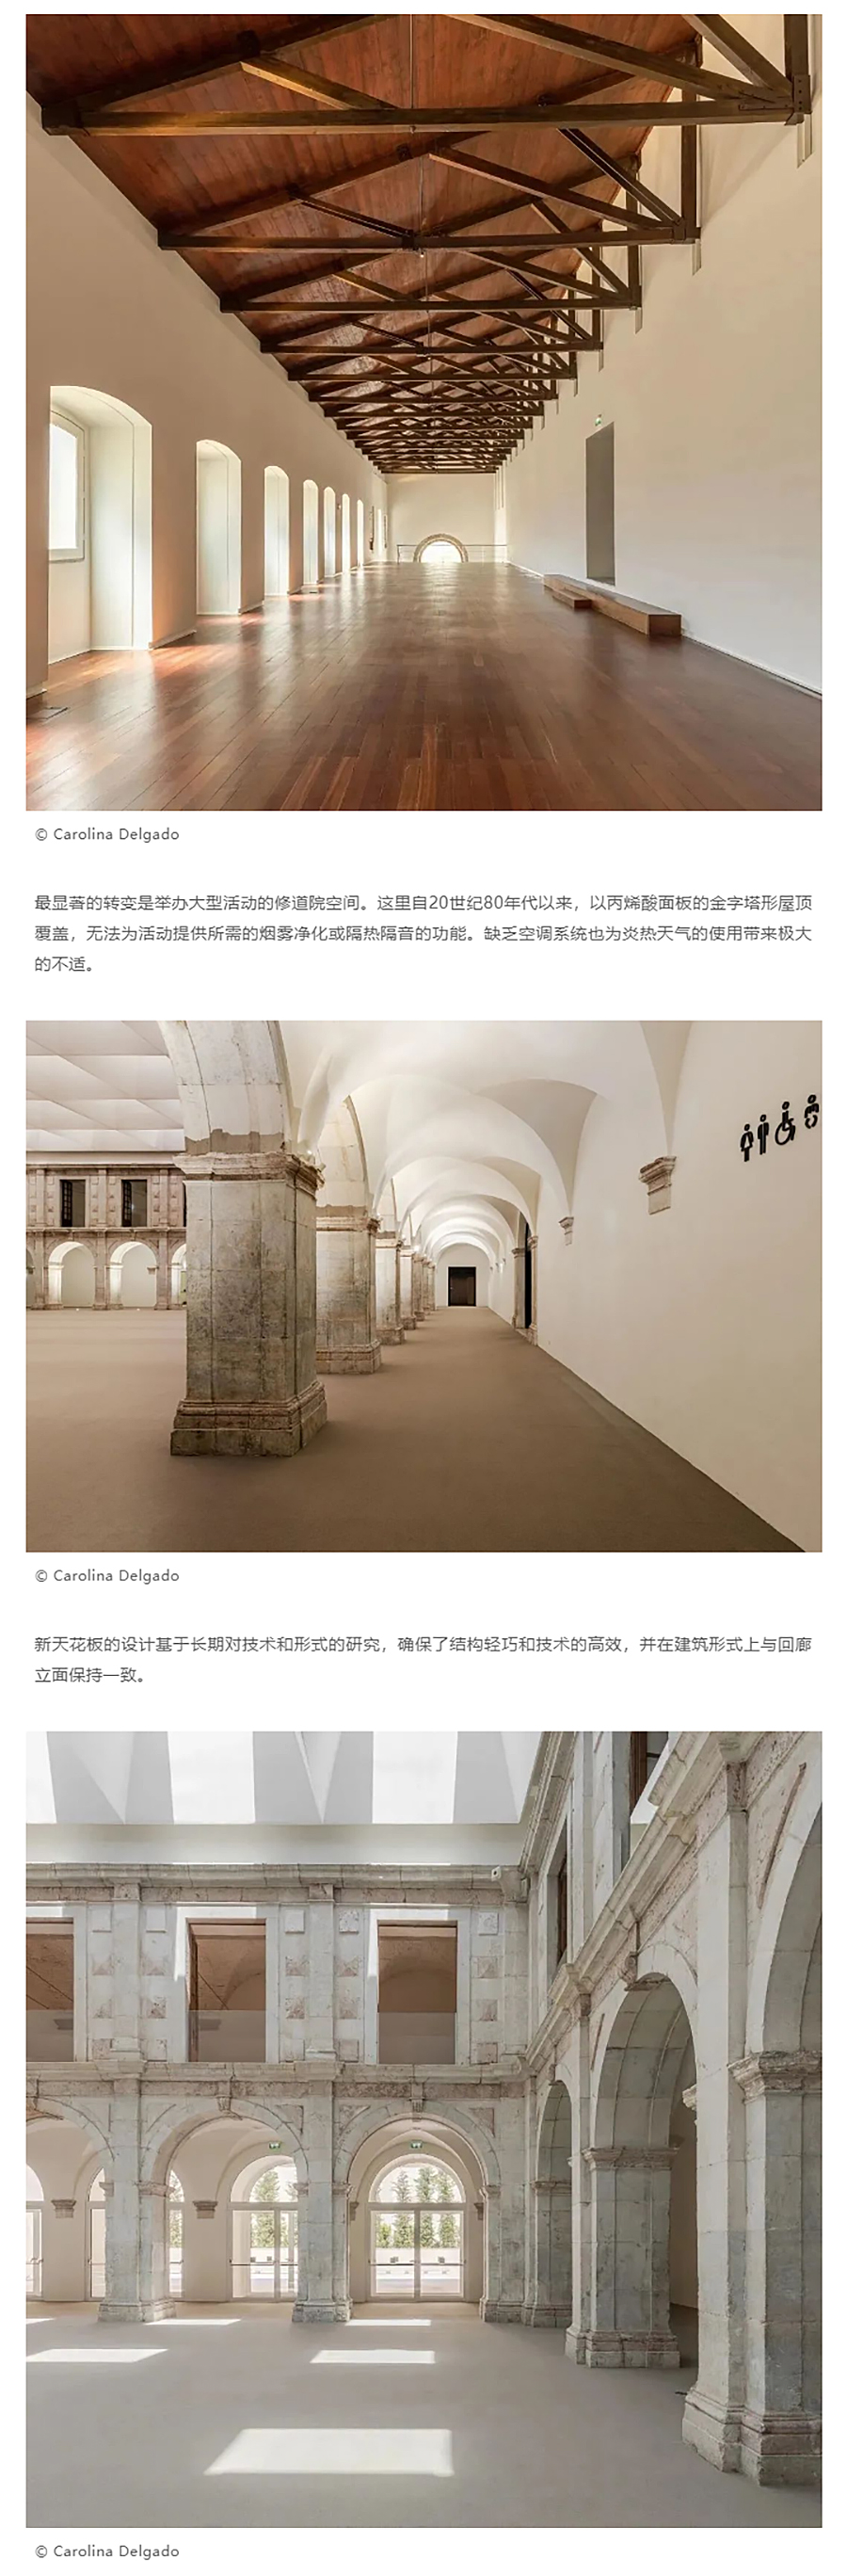 Renewal-Zone：贝亚托修道院活动中心︱历史建筑群更新_0004_图层-5 拷贝.jpg